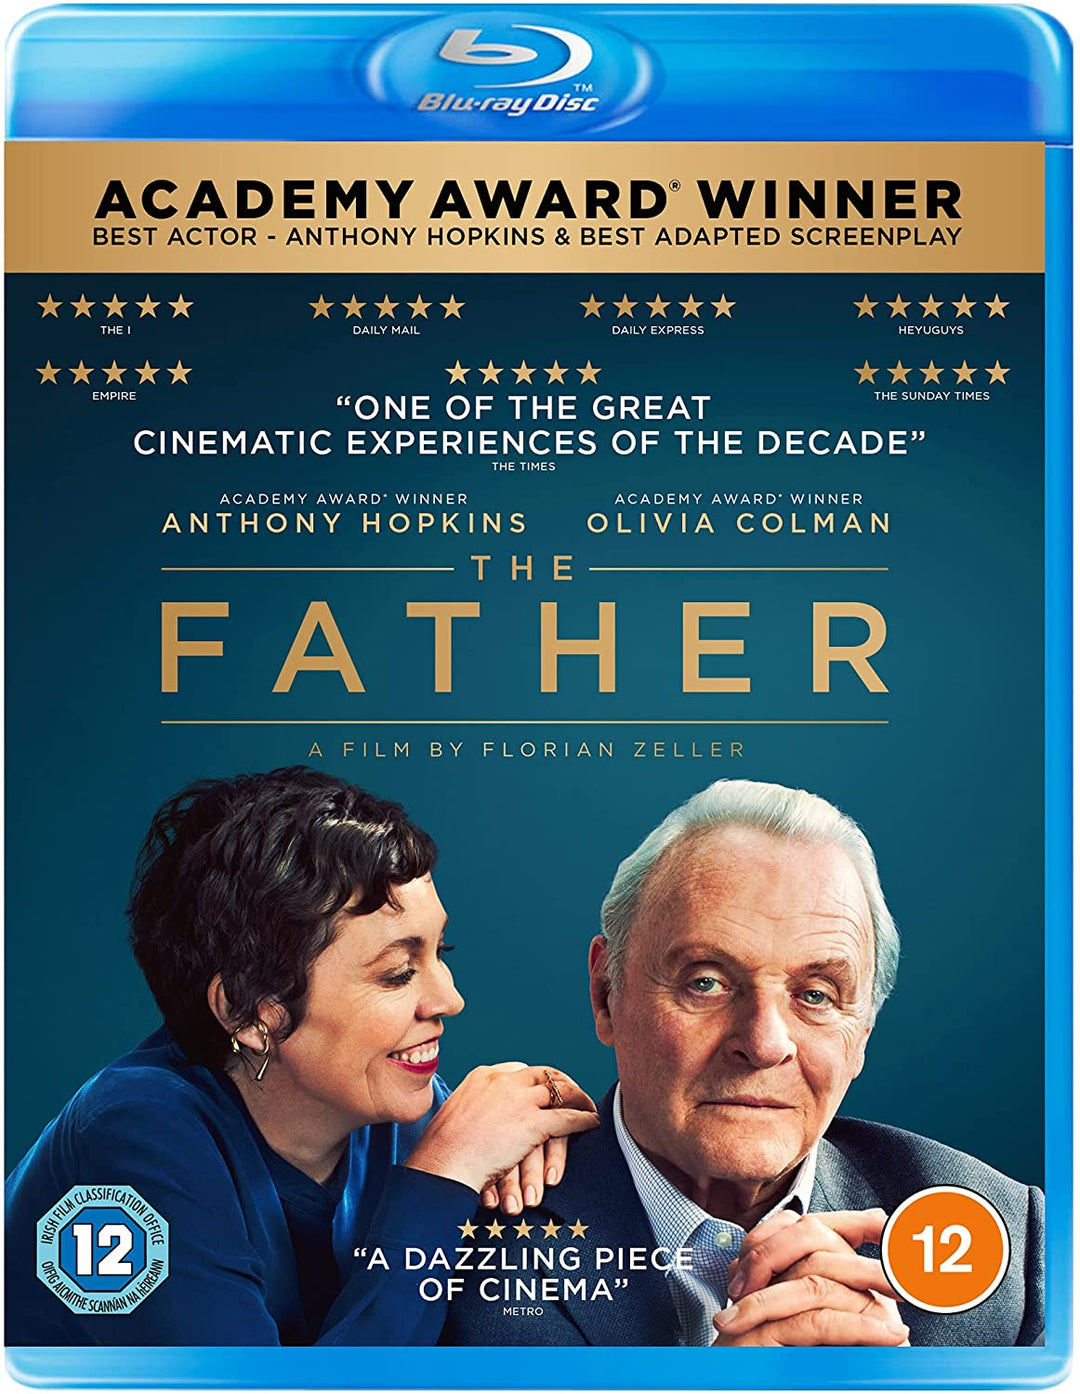 The Father - Drama [Blu-ray]